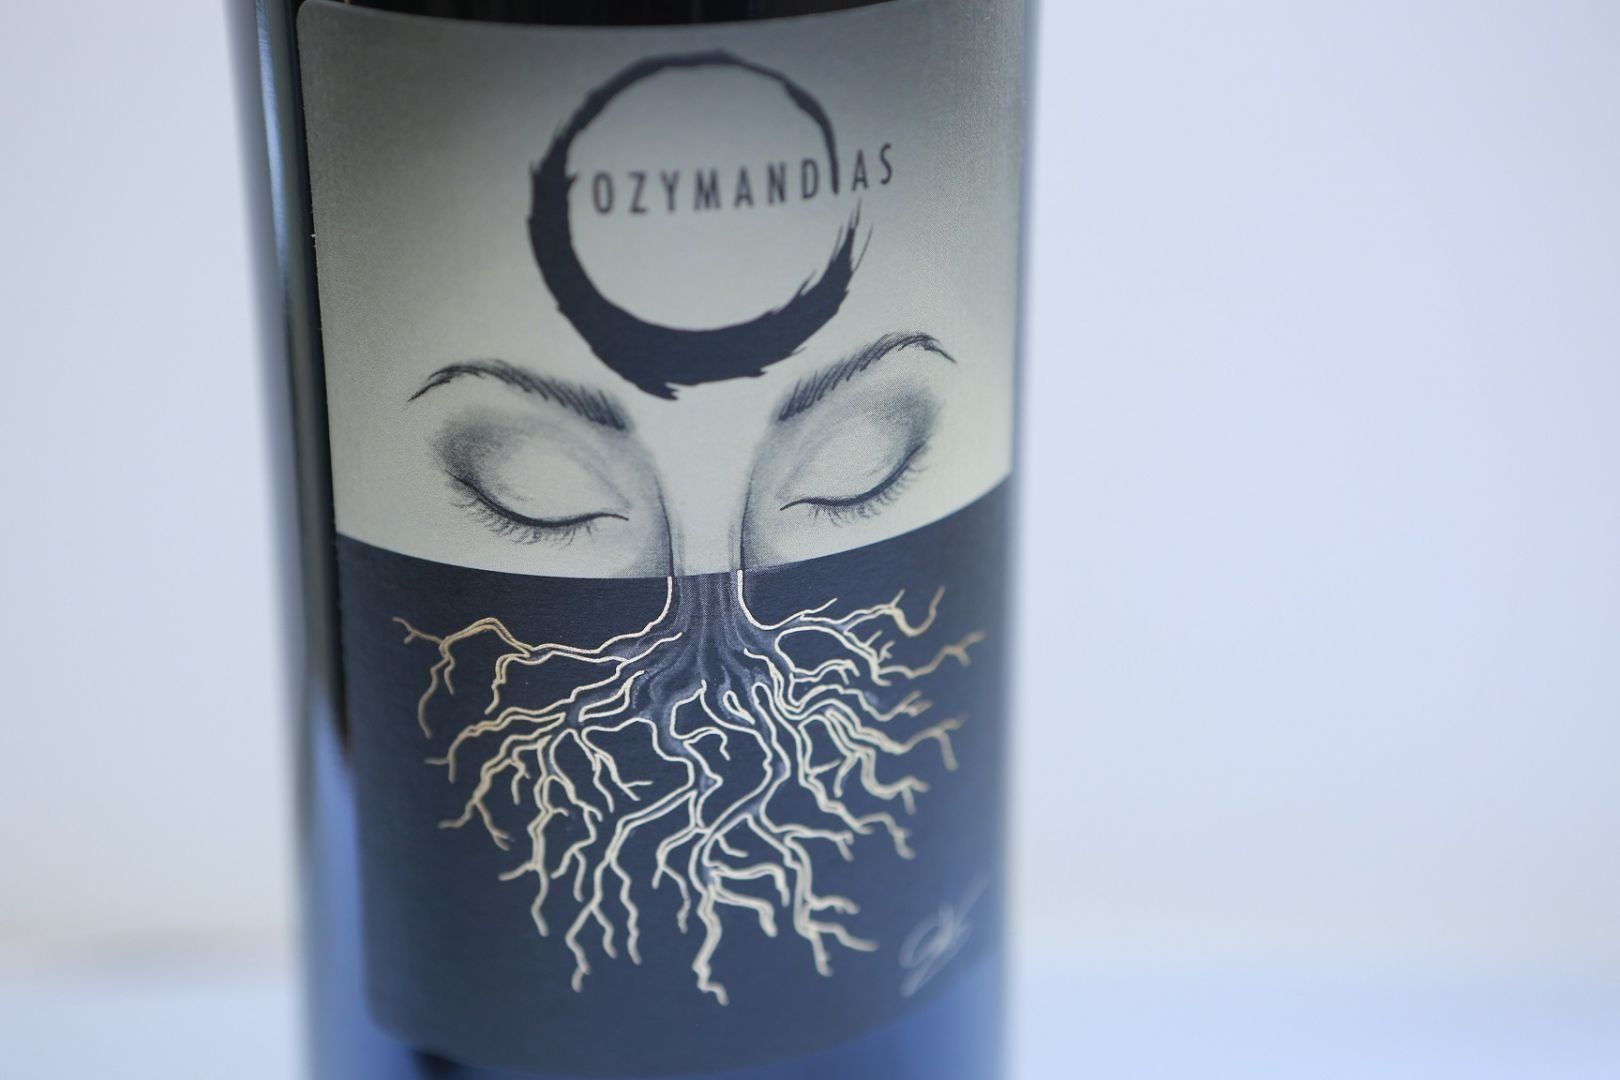 Ozymandias wine label